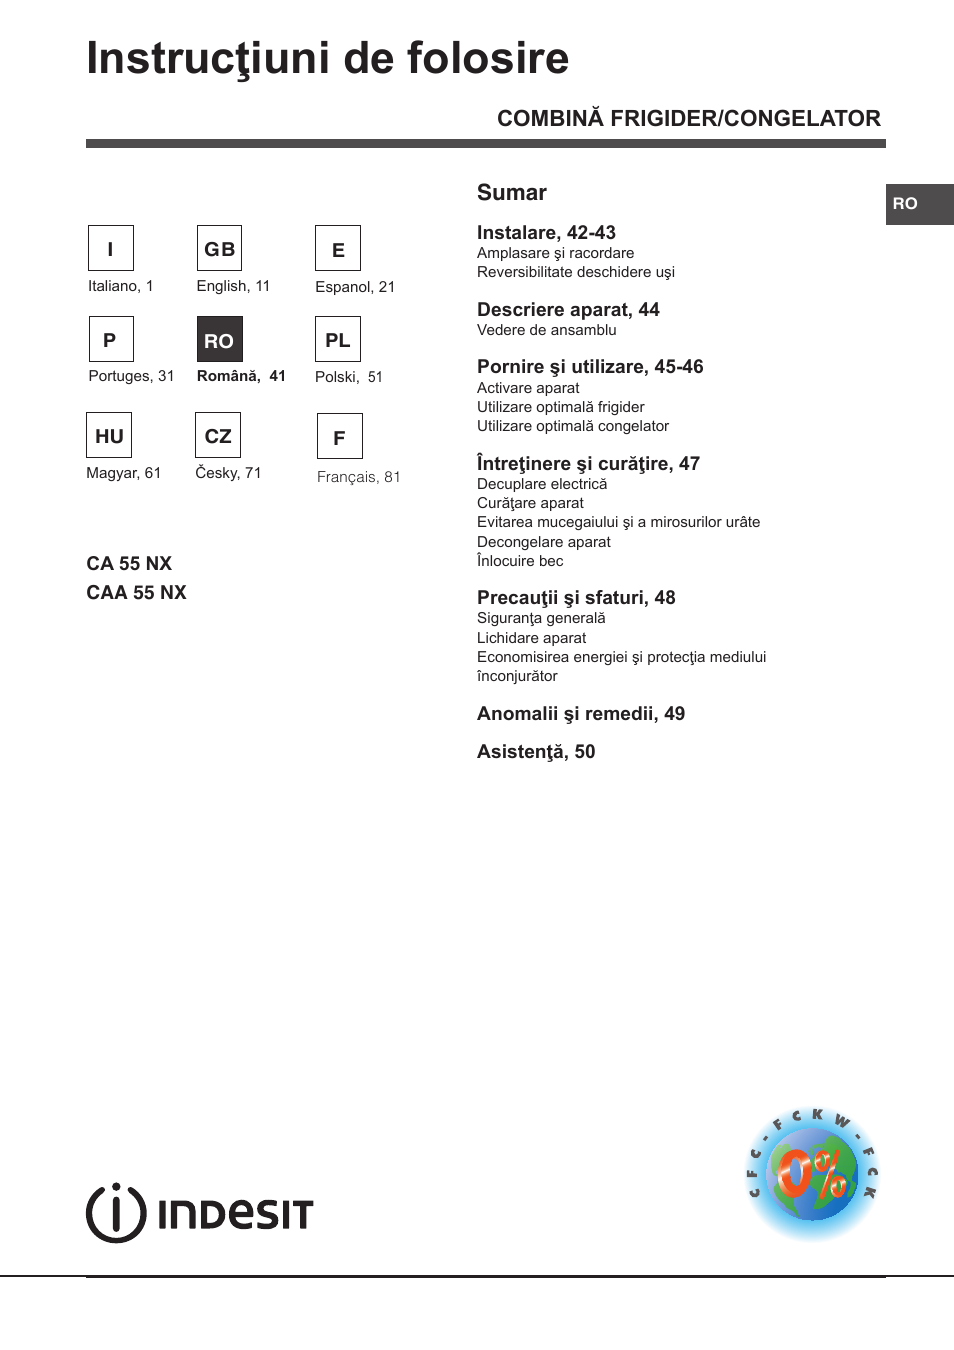 Instrucţiuni de folosire, Combină frigider/congelator sumar | Indesit CAA  55 NX User Manual | Page 41 / 92 | Original mode